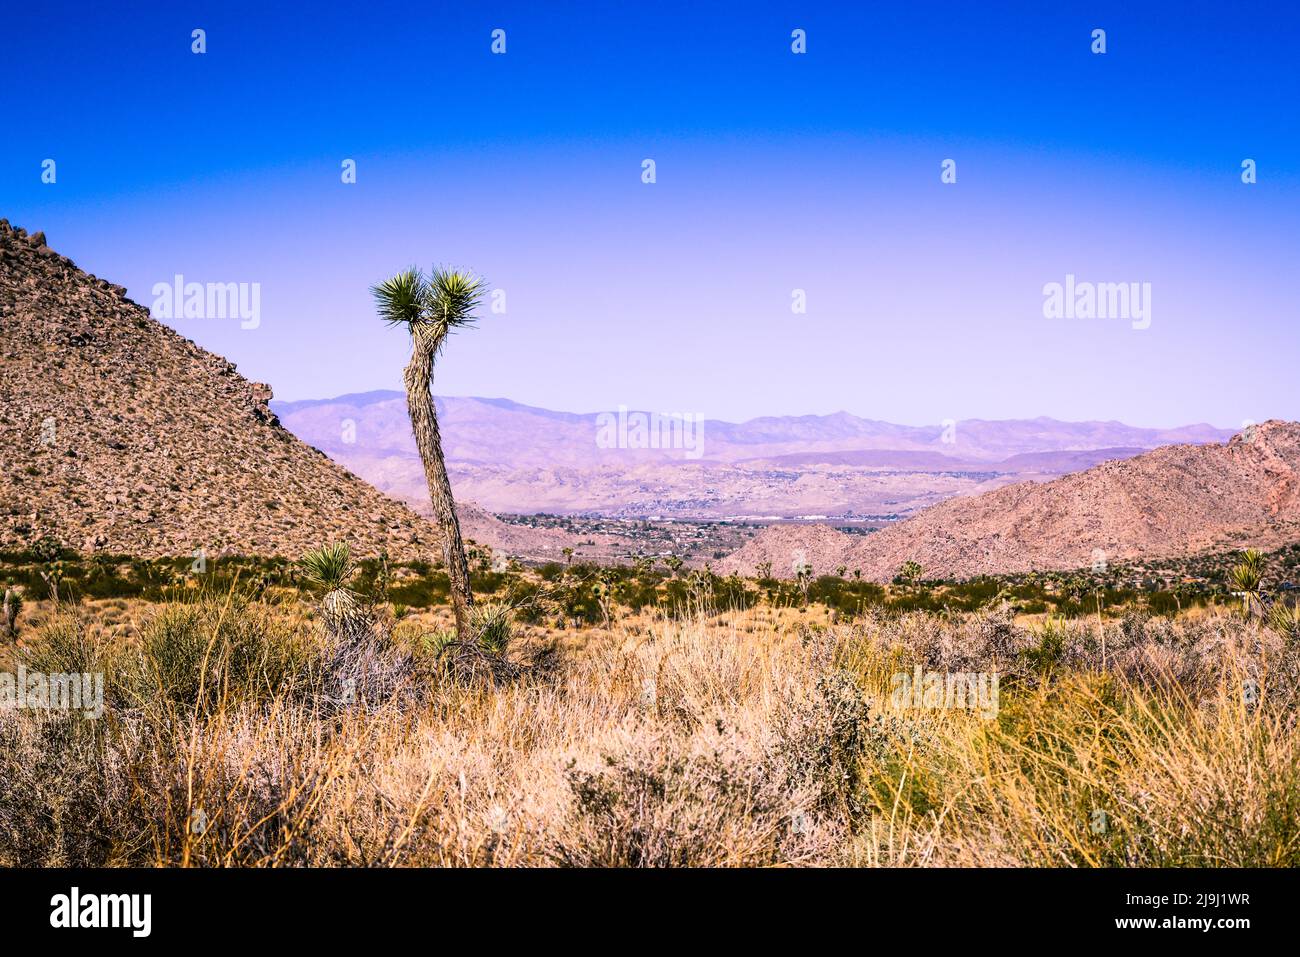 Un arbre de Joshua se dresse seul parmi les paysages désertiques surplombant la vallée de Coachella, dans le parc national de Joshua Tree, dans le désert de Mojave, CA, Etats-Unis Banque D'Images